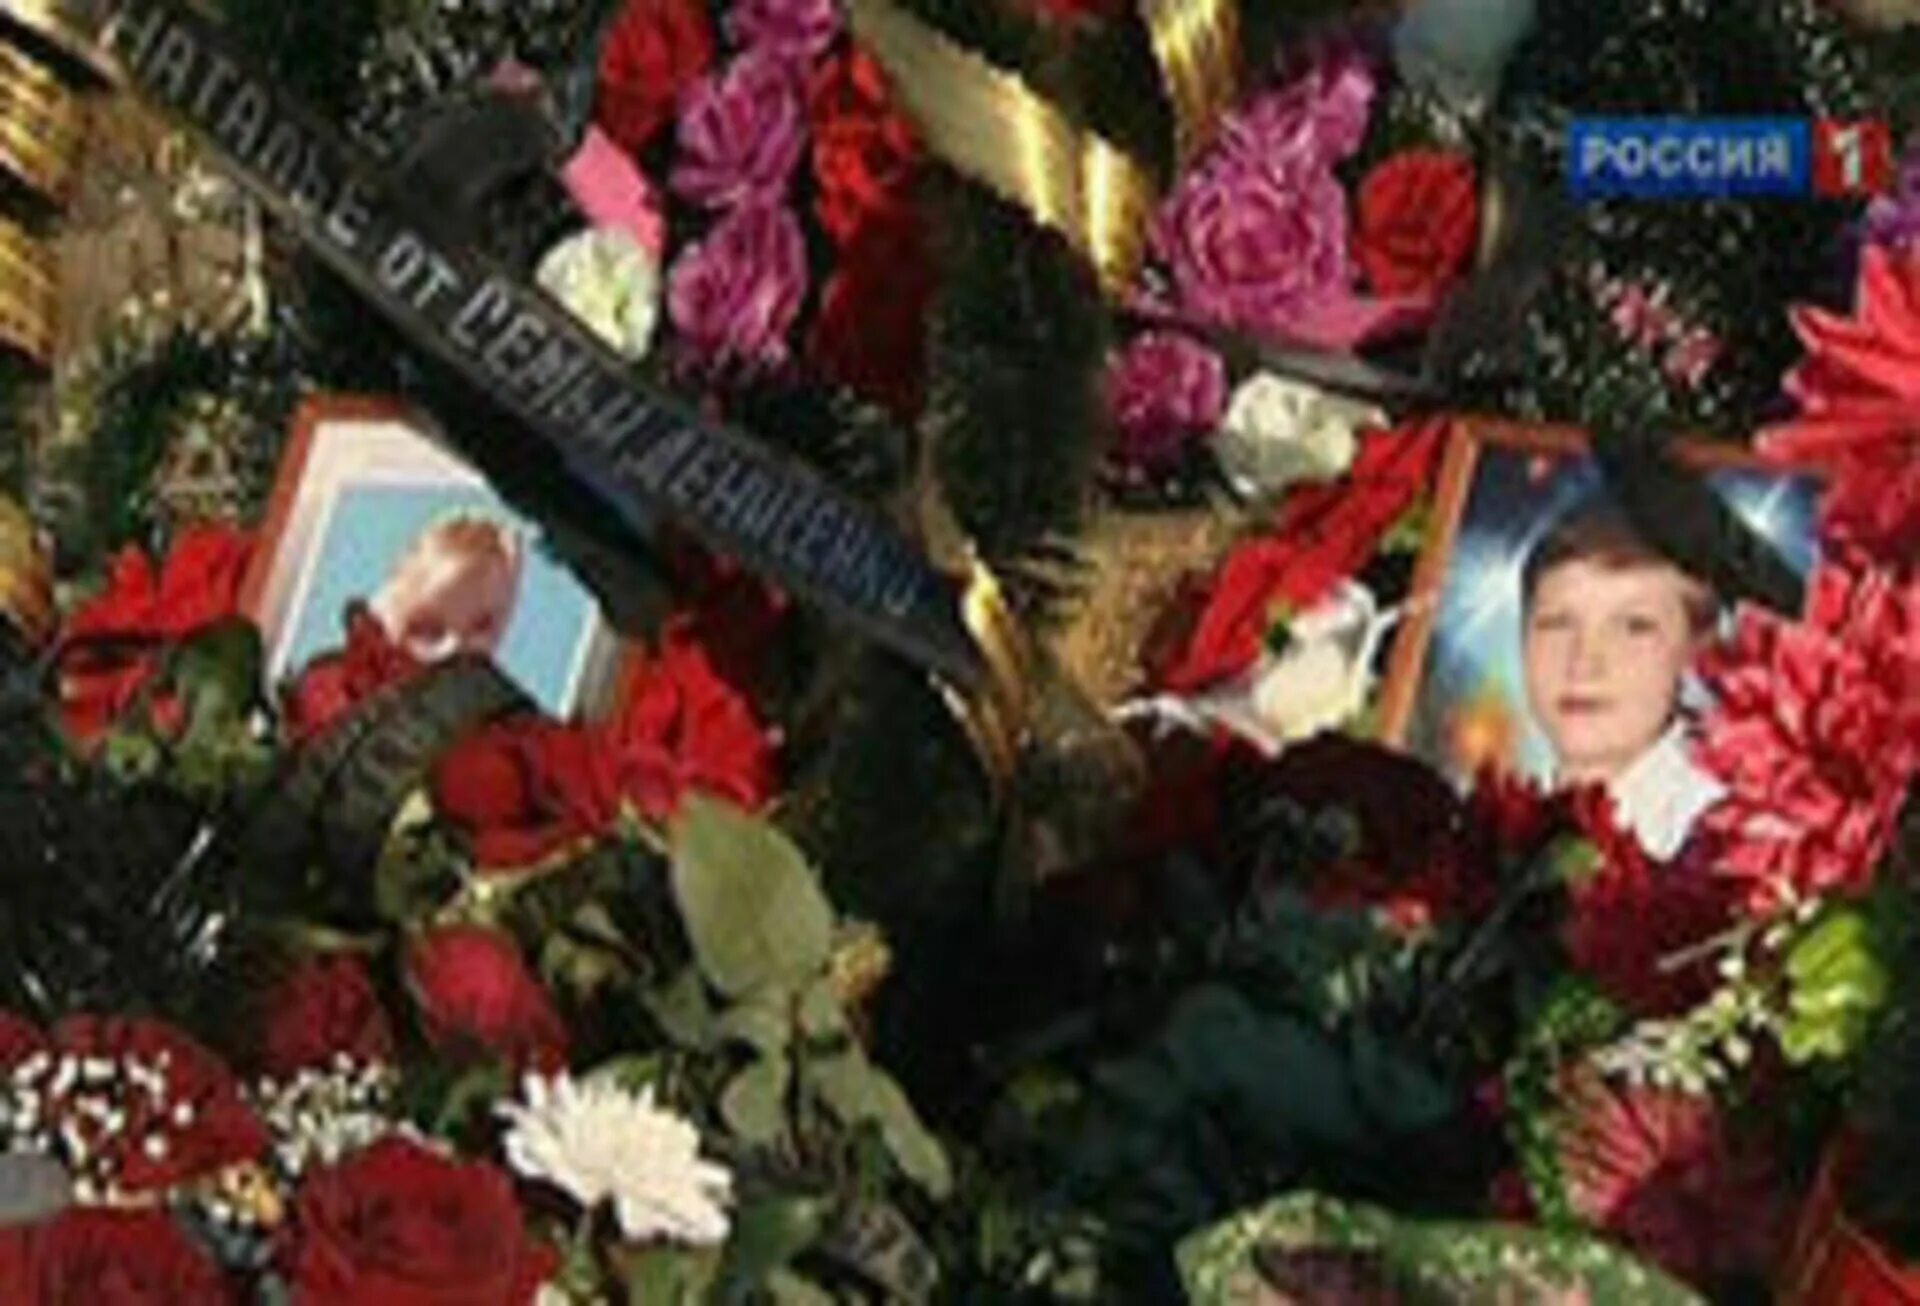 Трагедия в станице Кущевская Кущевской 2010. Похороны 12 жертв в станице Кущевской.